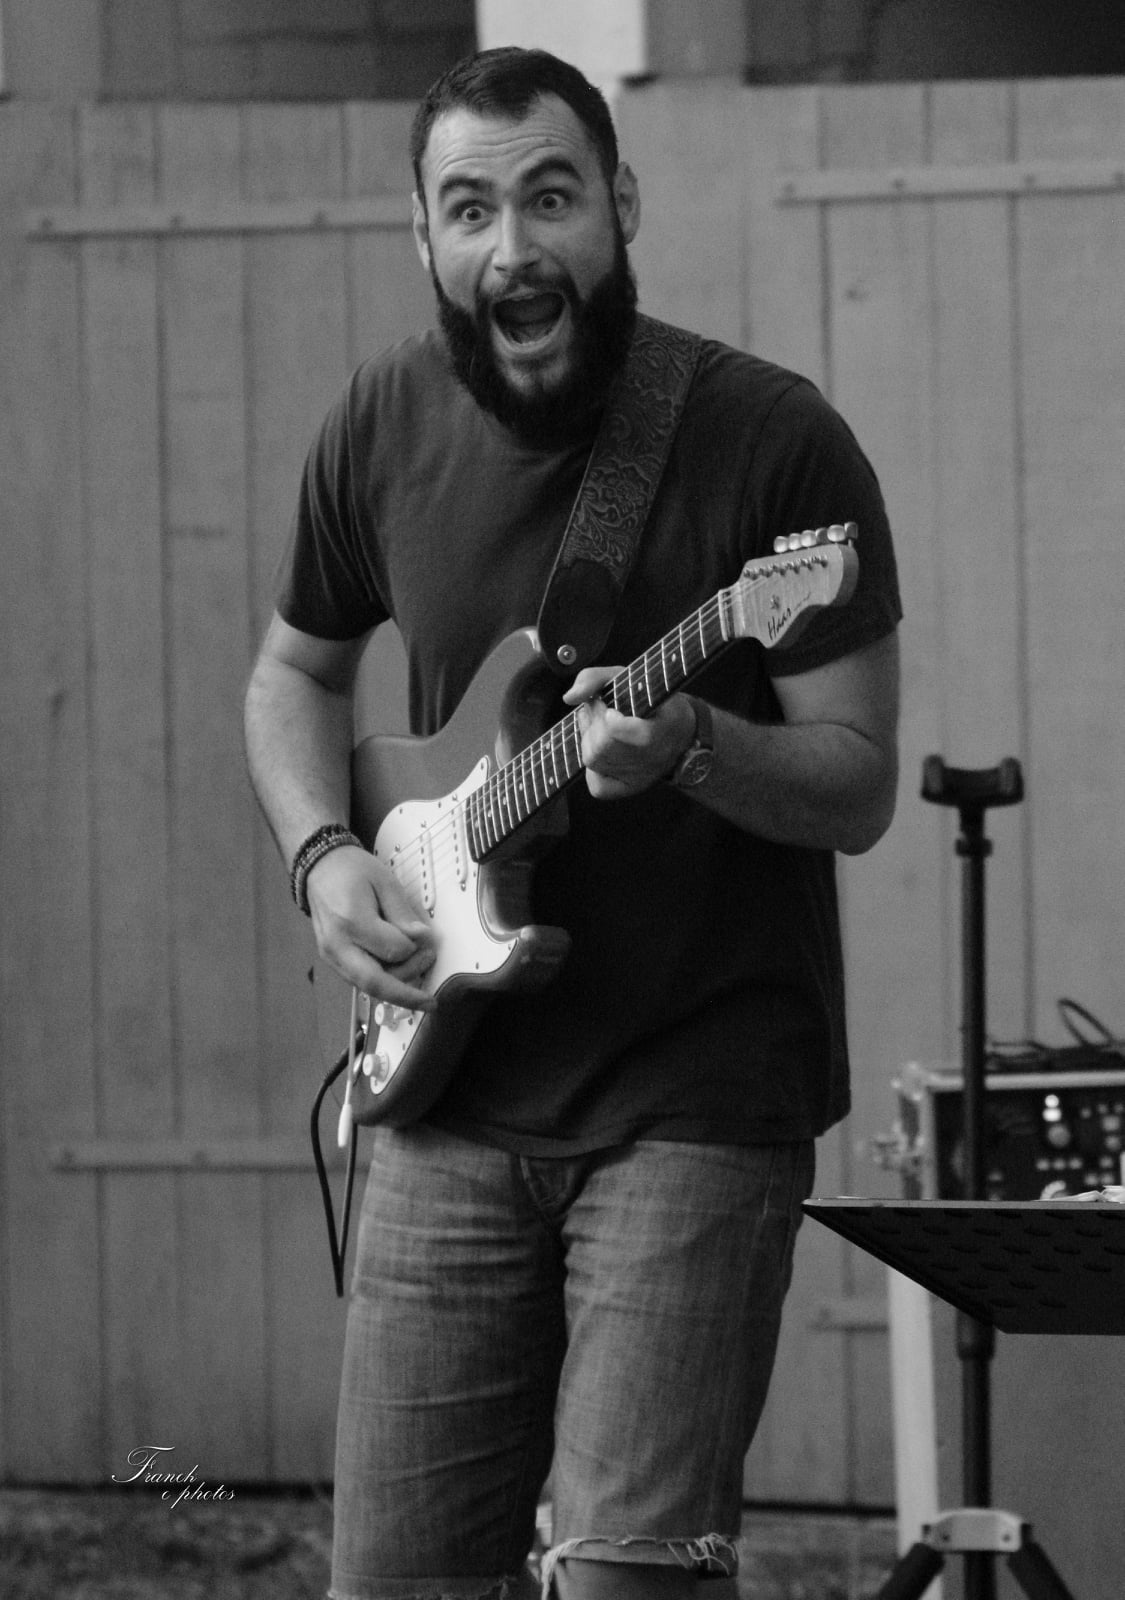 une photo en noir et blanc de Vince qui fait une grimace tout en jouant de la guitare